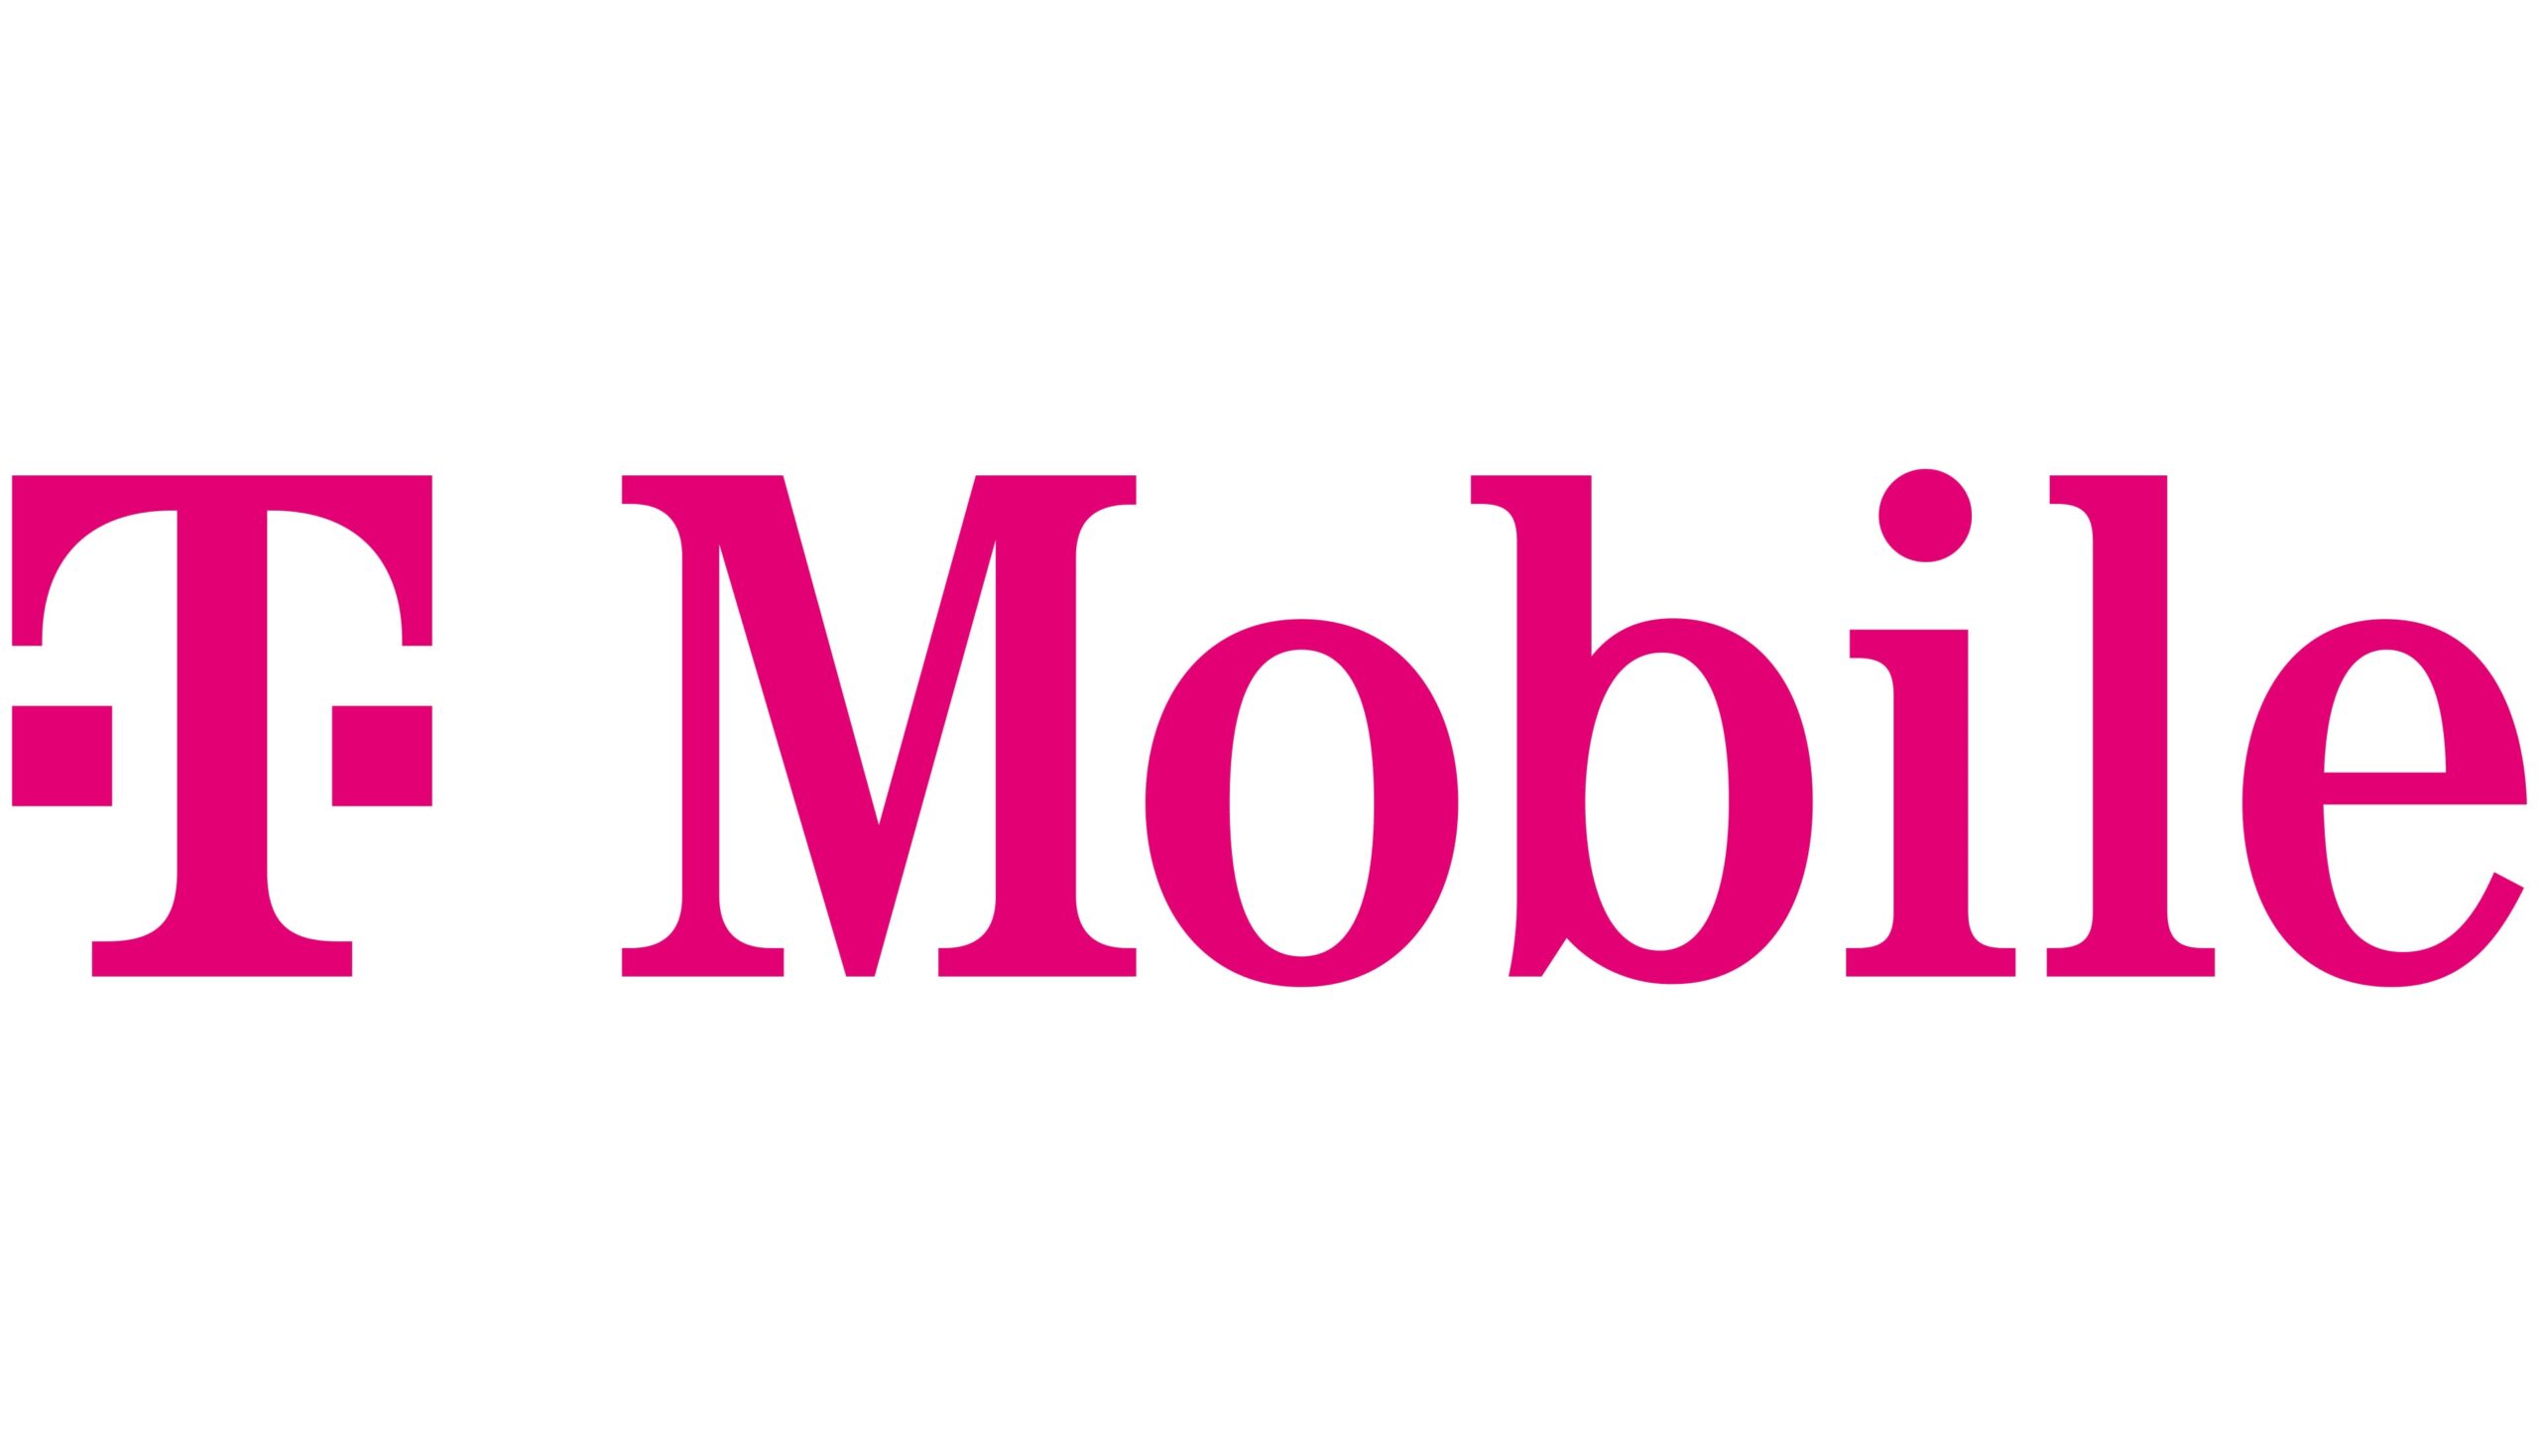 T-Mobile-Logo